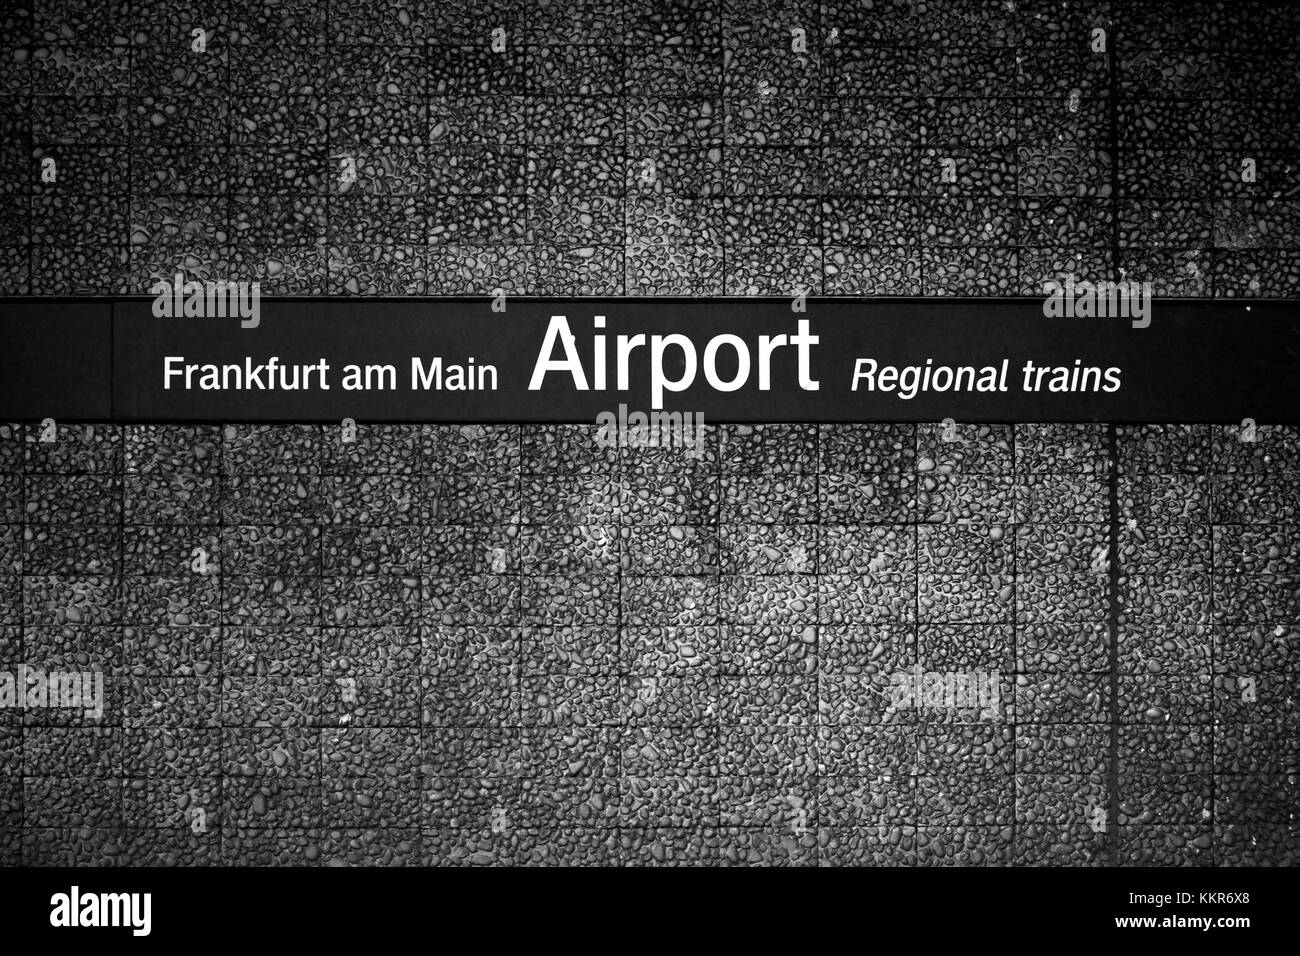 Zeichen des Vogels Frankfurt am Main - Flughafen - Regionalzüge, Stockfoto